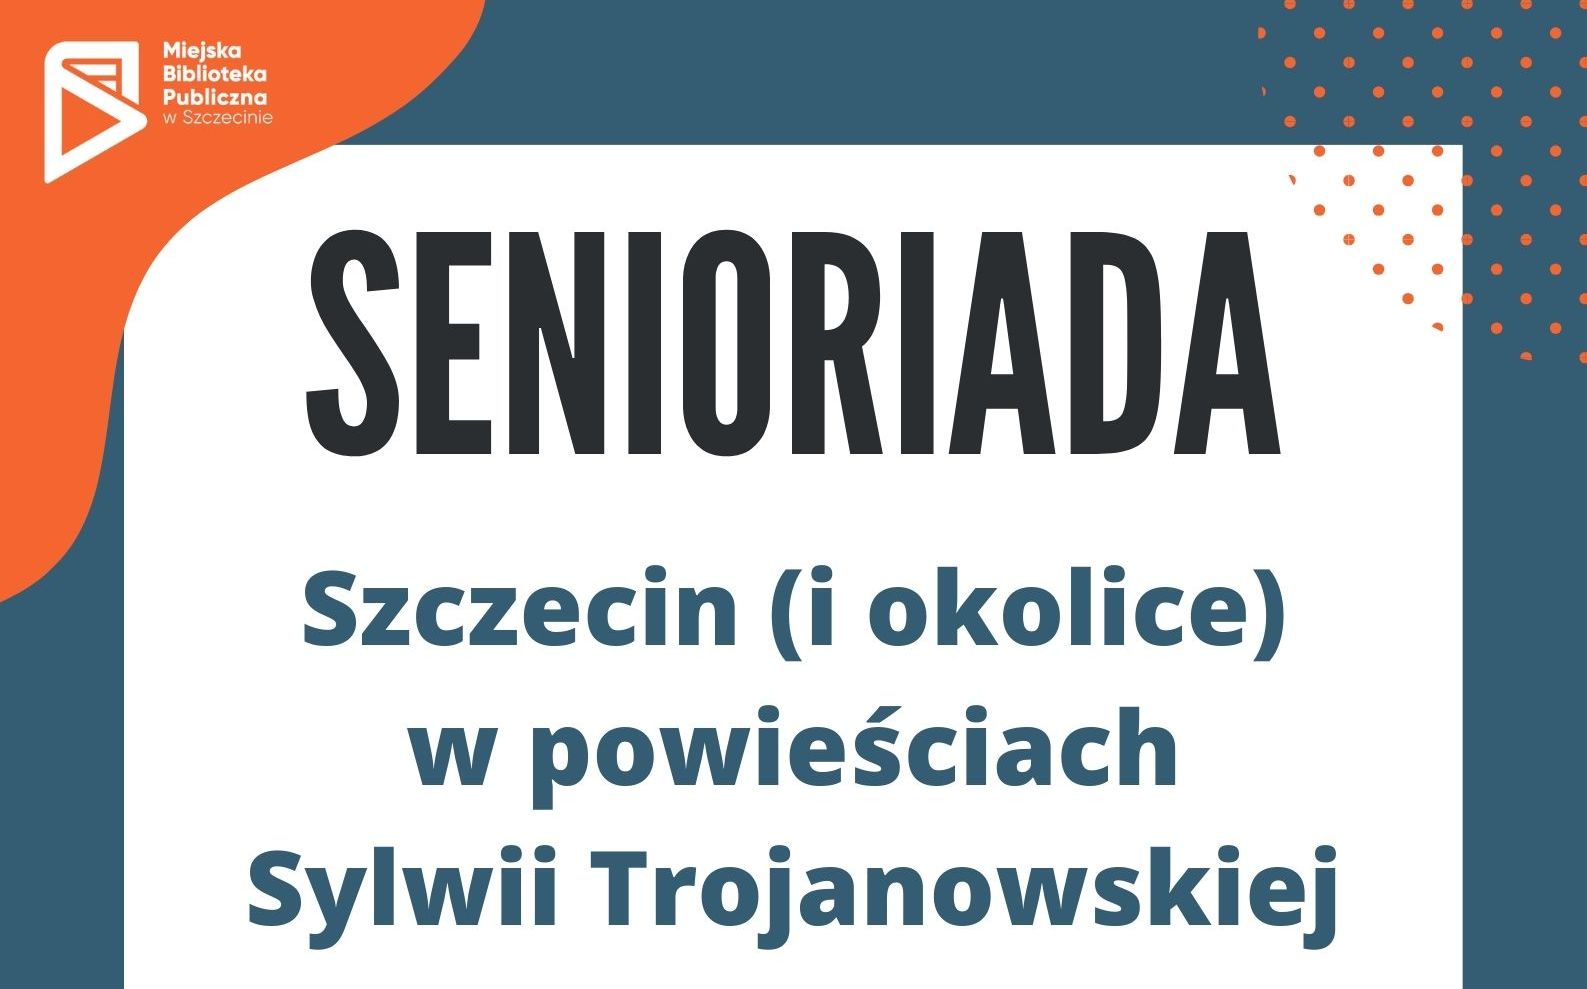 Szczecin (i okolice) w powieściach Sylwii Trojanowskiej [Senioriada]